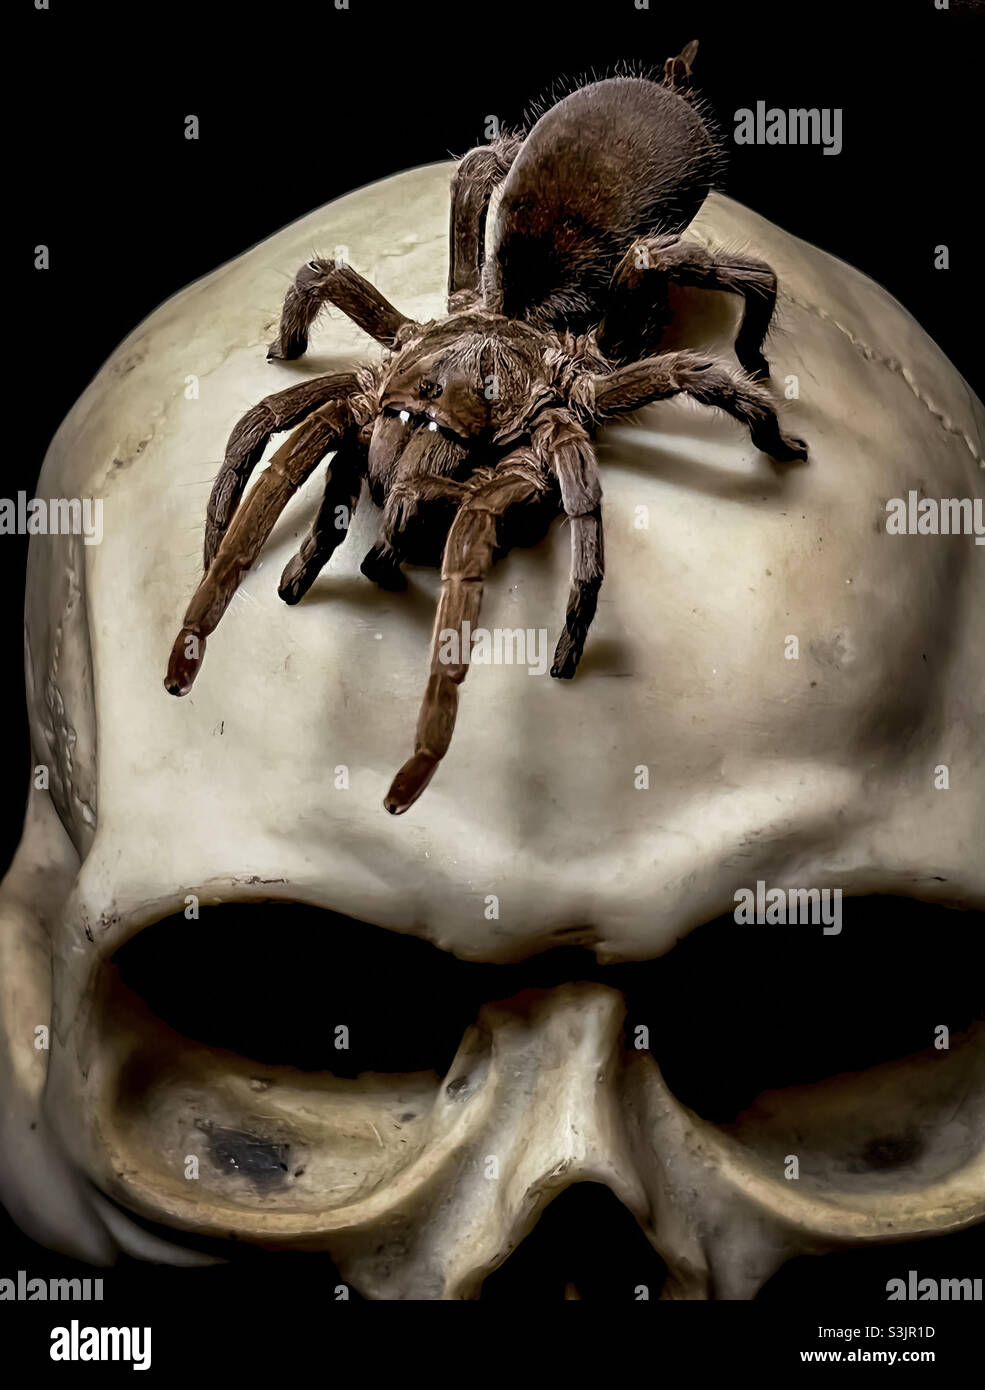 Araignée géante sur le crâne humain Banque D'Images